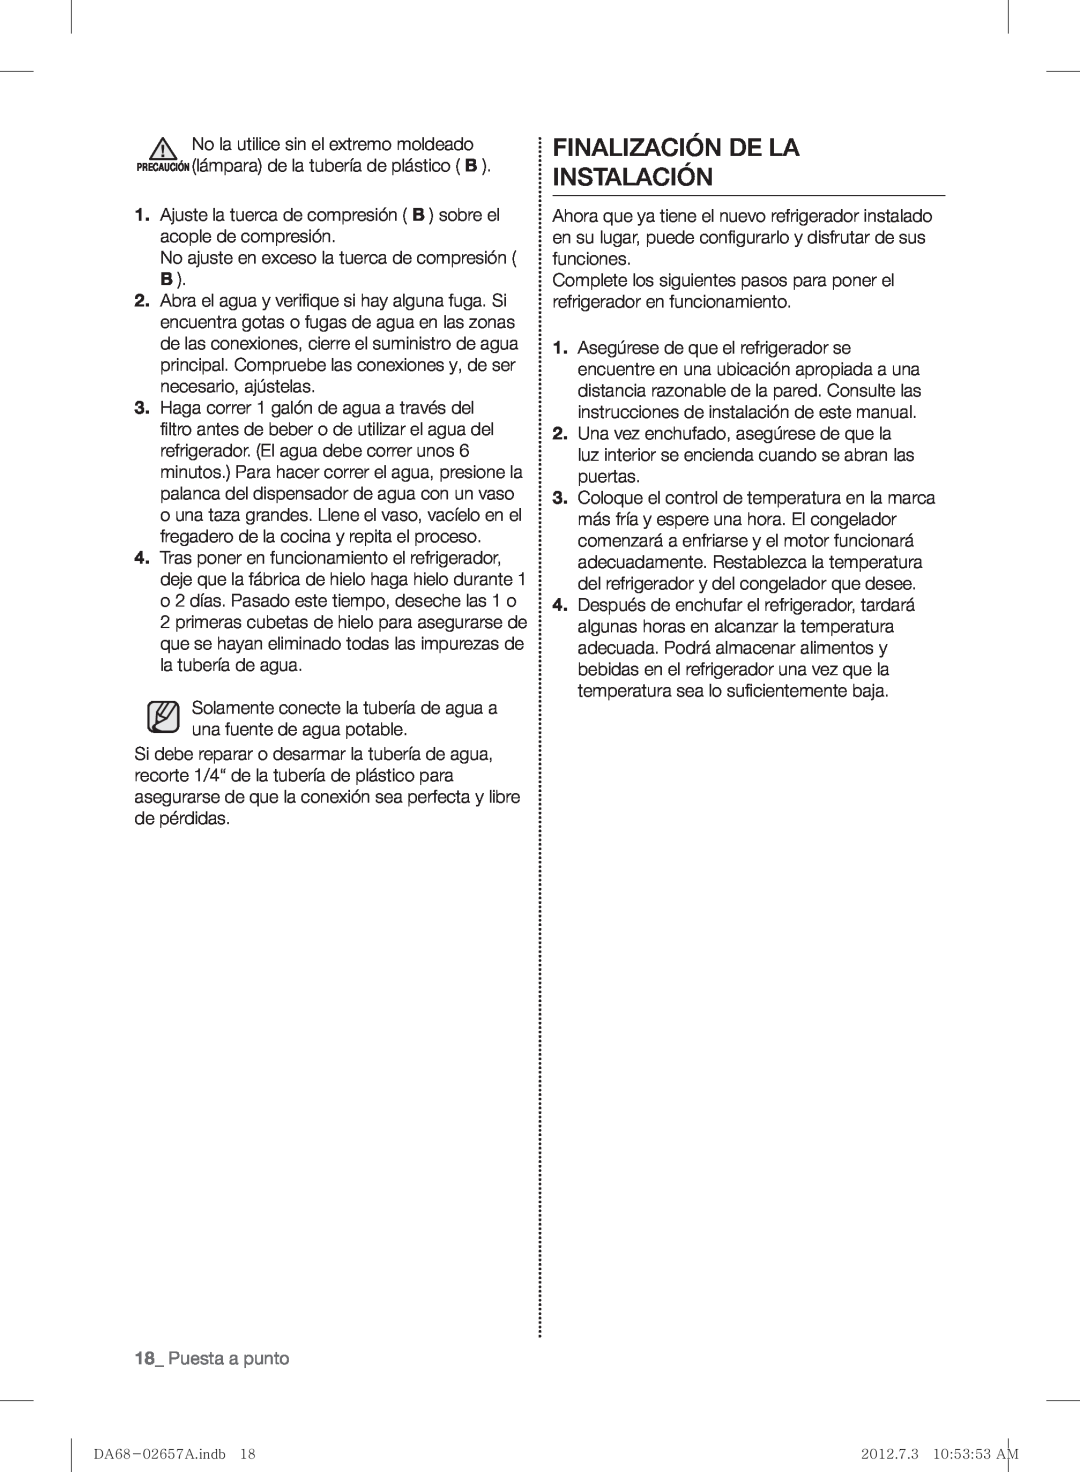 Samsung RF221NCTABC user manual Finalización De La Instalación, Puesta a punto 